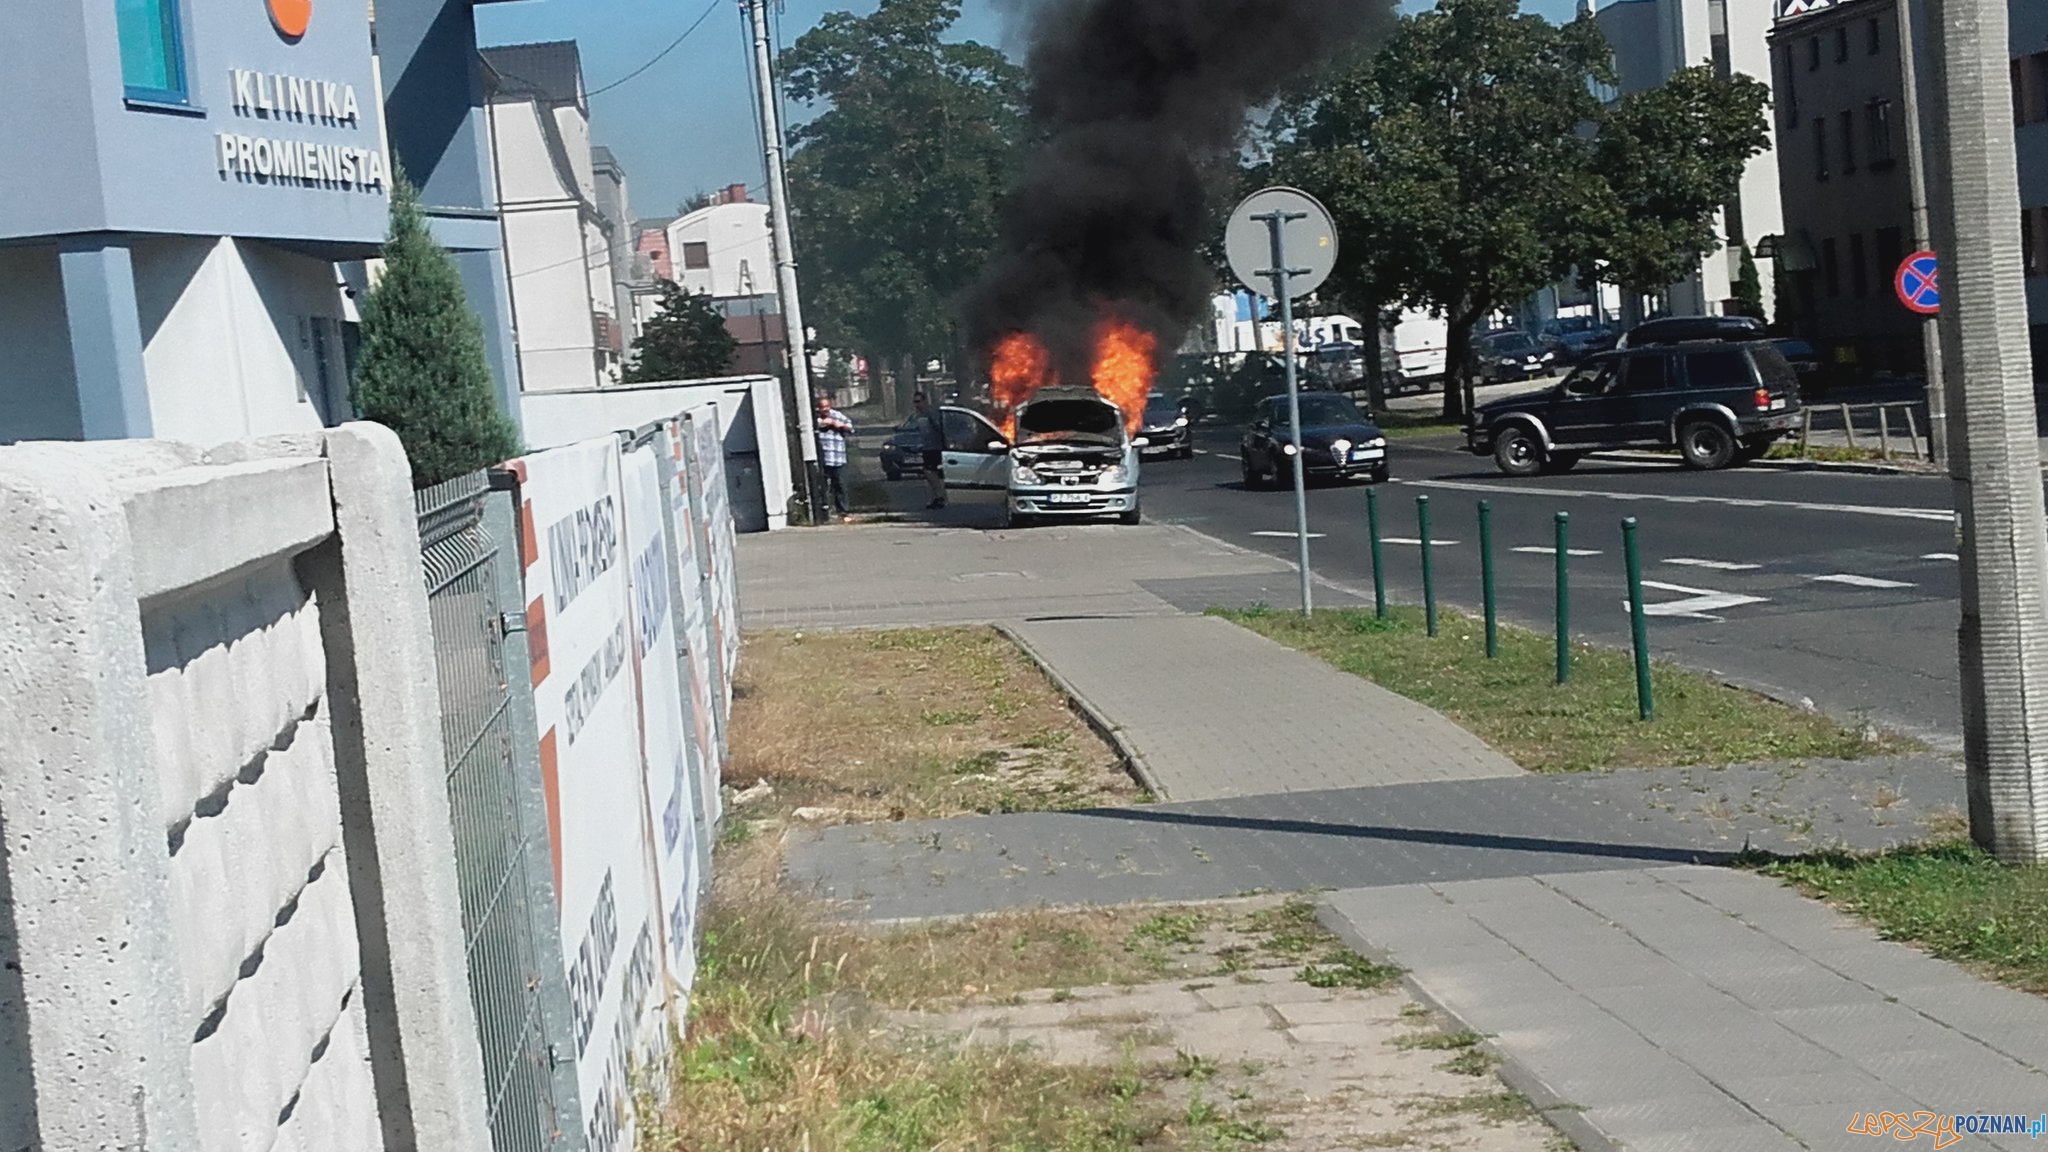 Pożar samochodu na Promienistej  Foto: twitter @LeszczynskiR